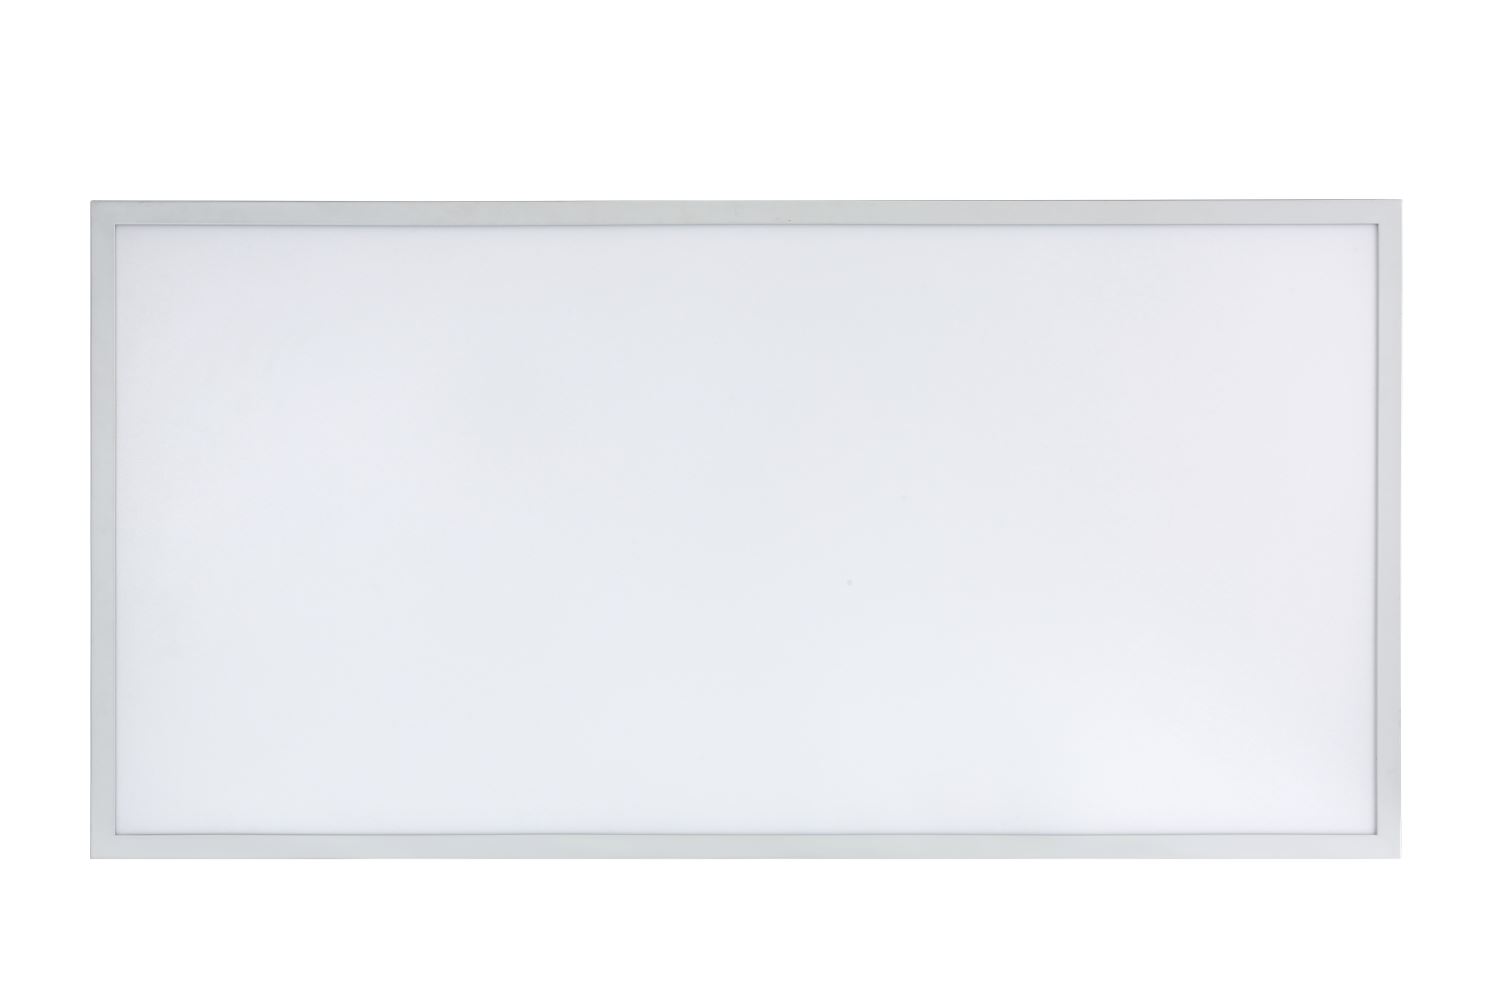 LED panel light 4x2 60x120 600x1200 UL FCC led flat panel lamp ip44 4000K-6000K dimmable 3